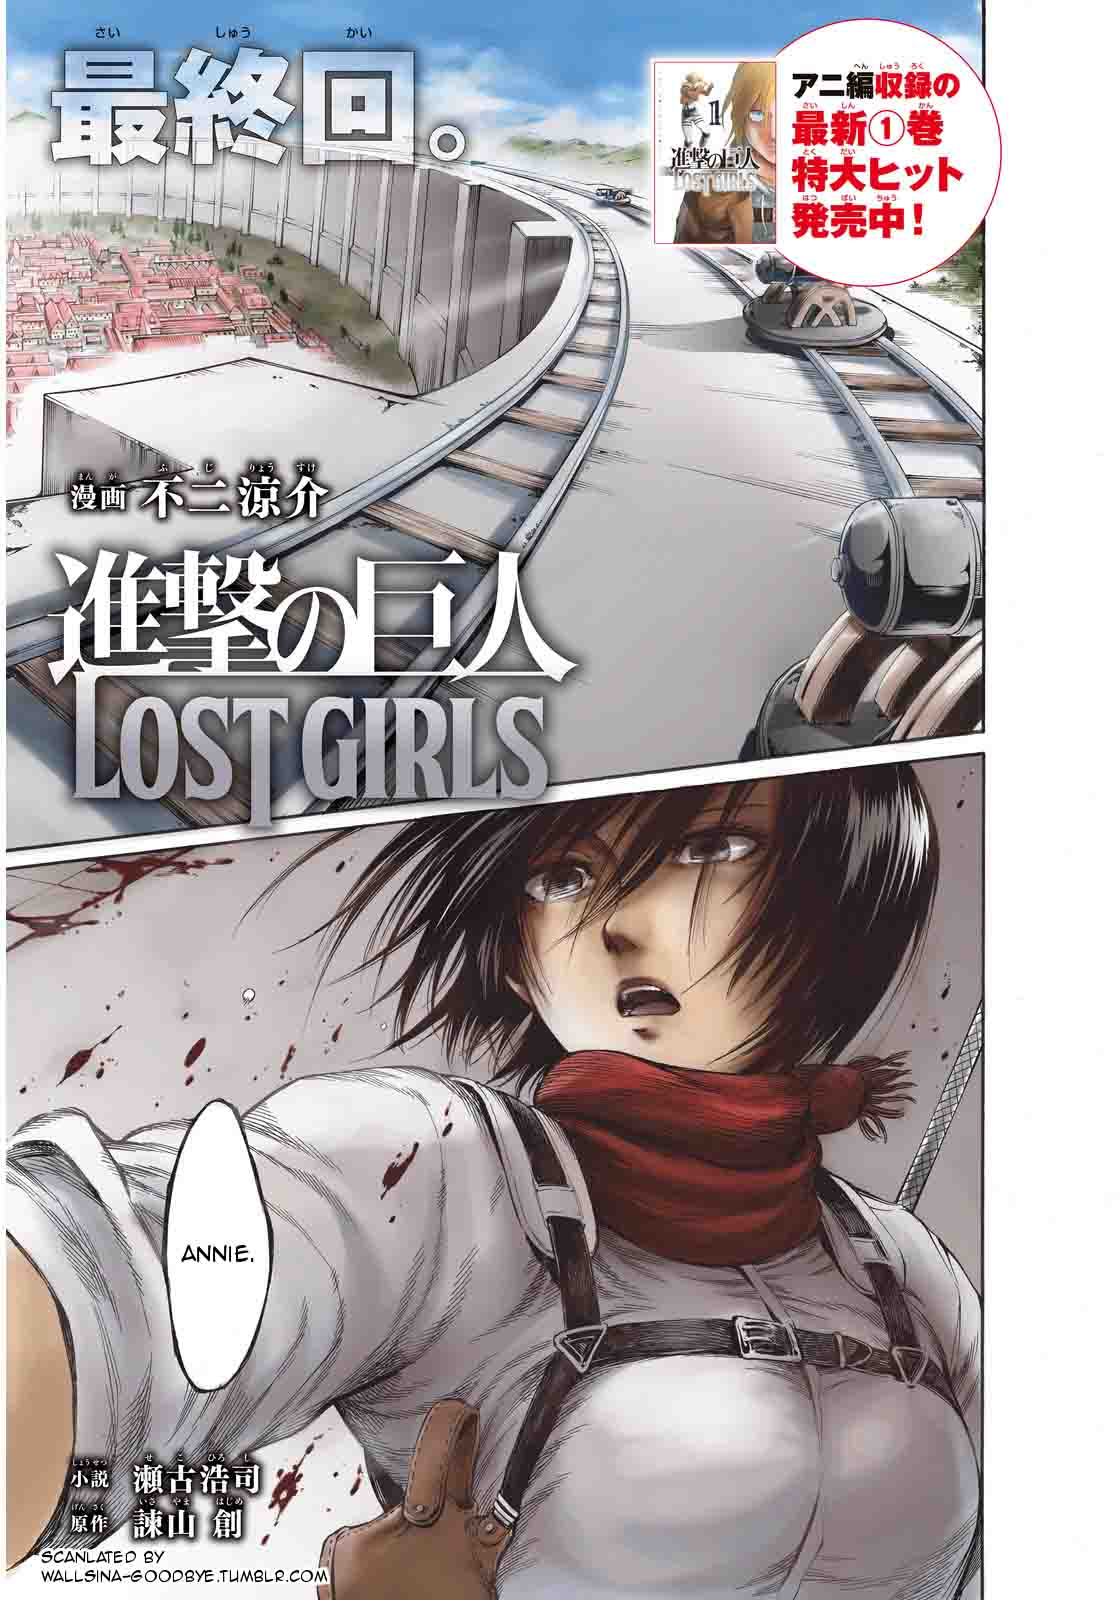 Shingeki No Kyojin Lost Girls 10 1